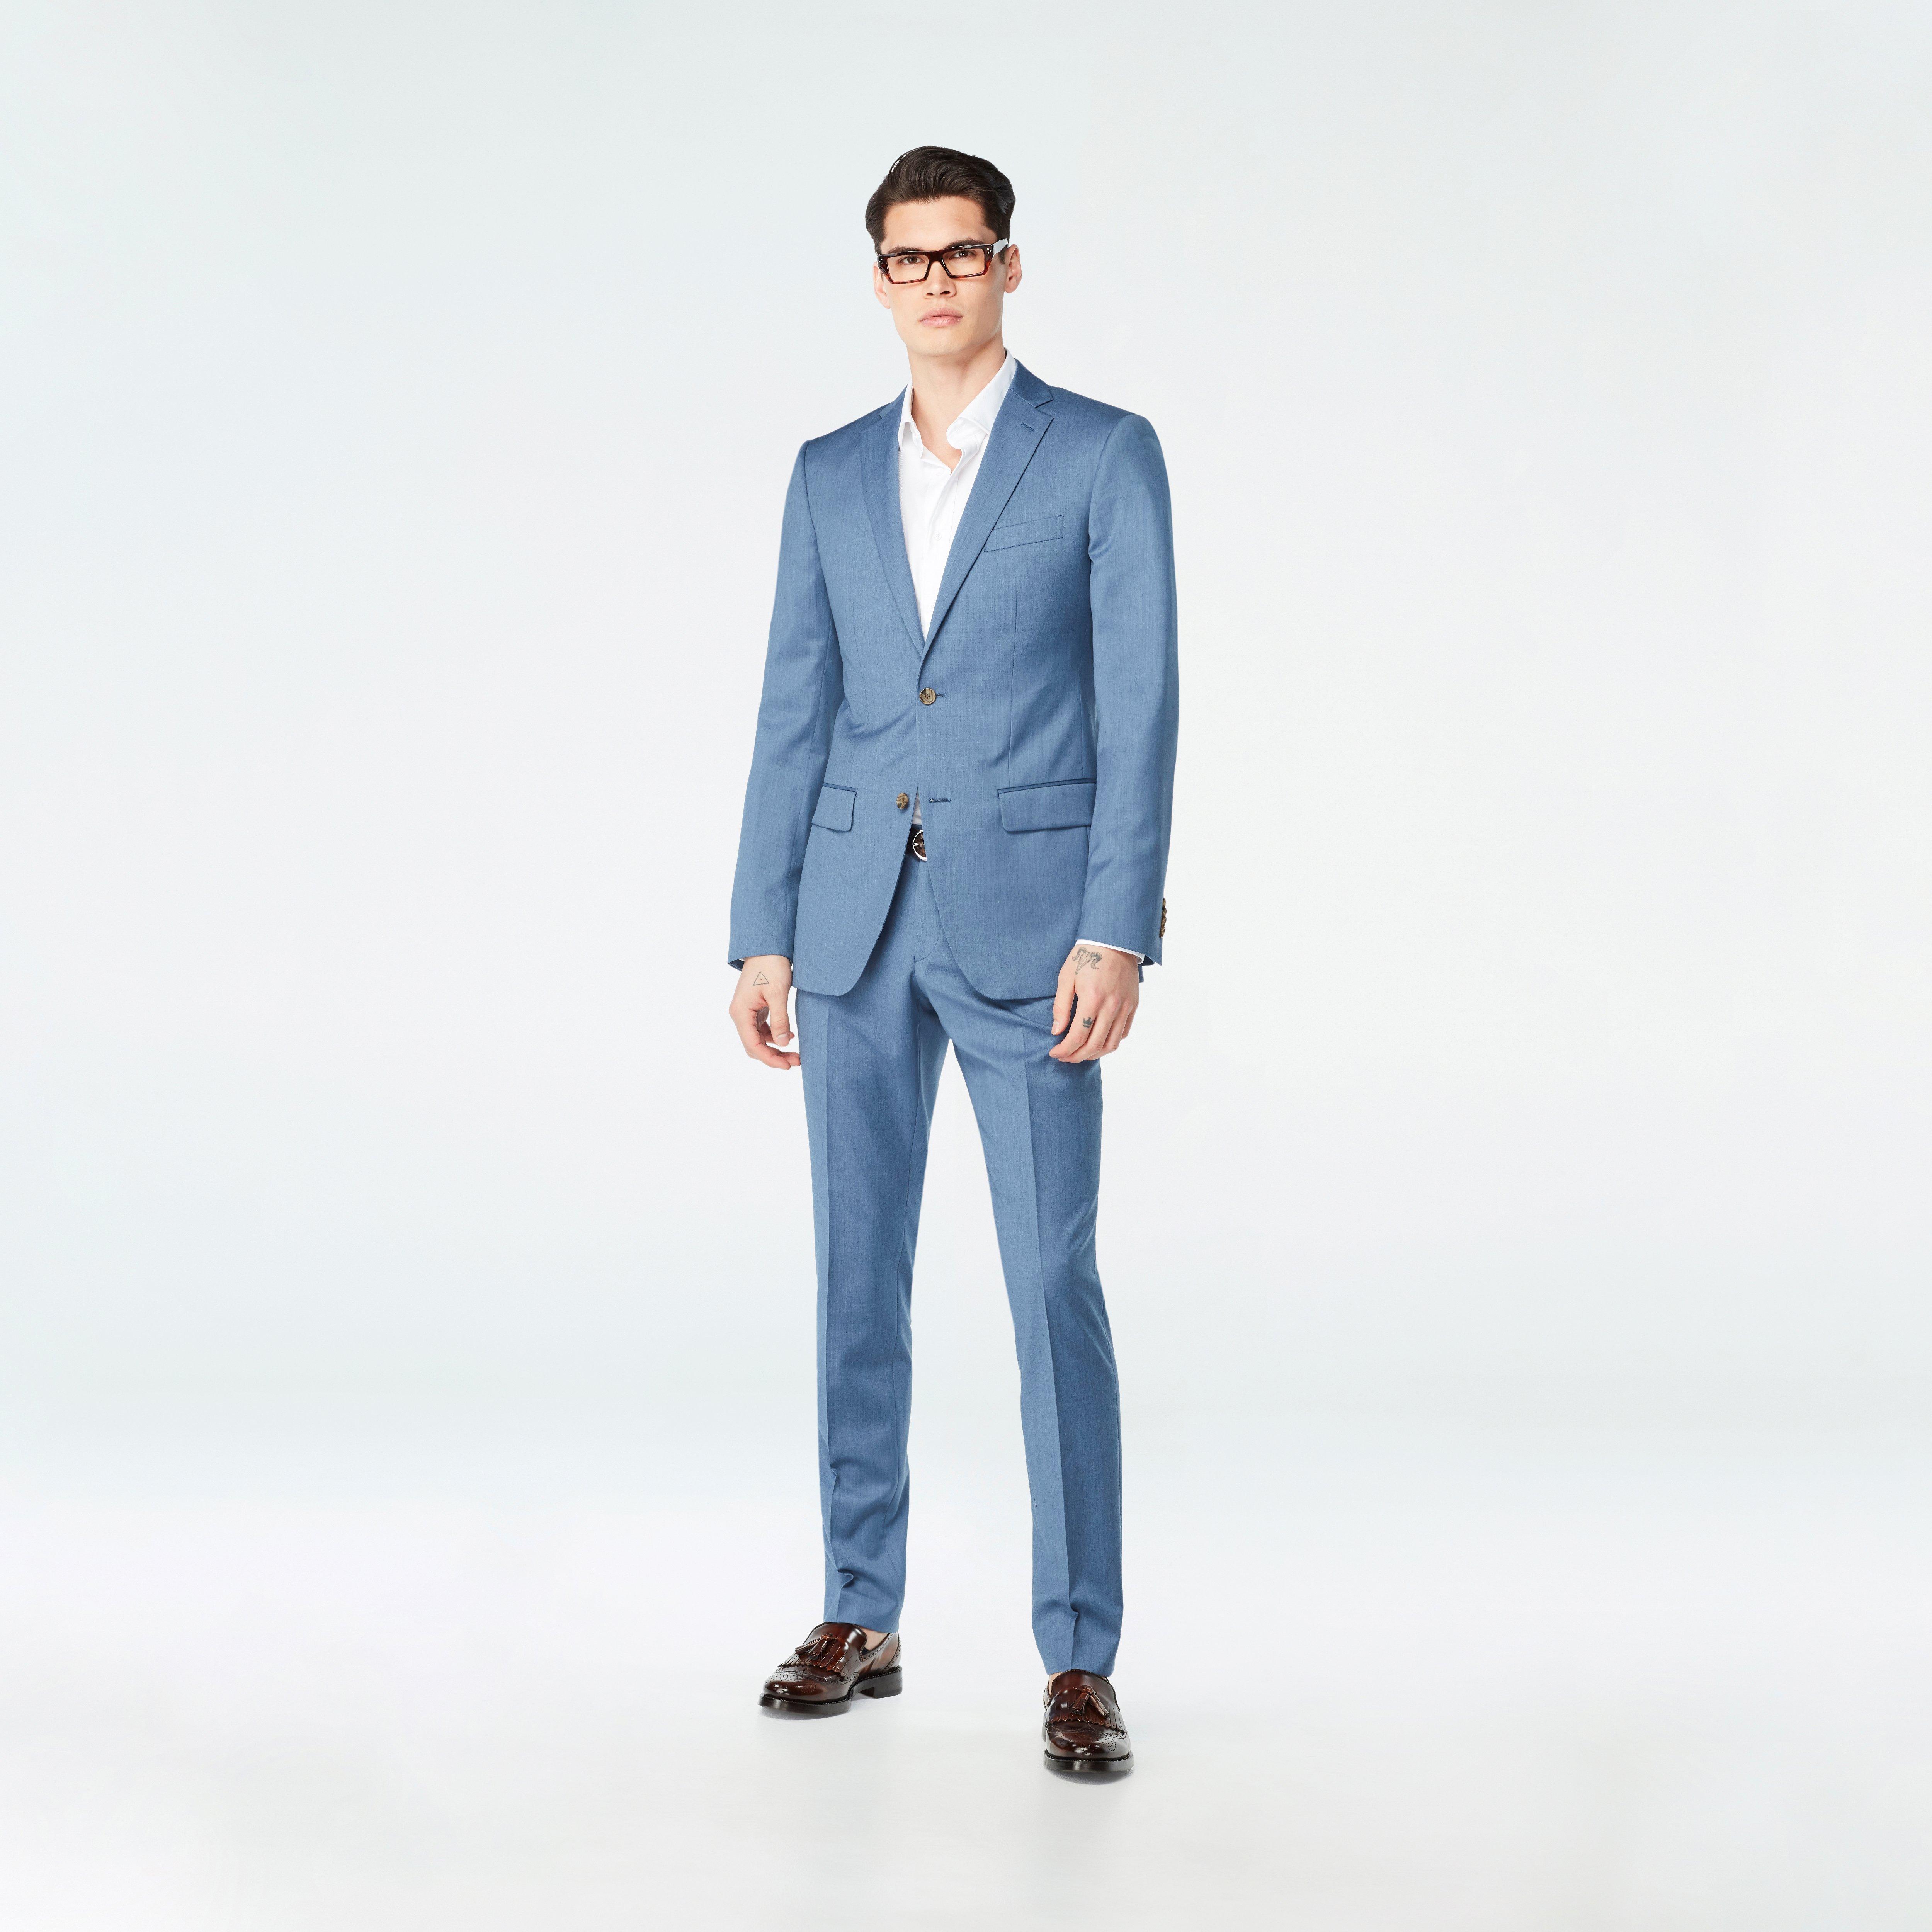 Candidmen: Rent / Buy - Neon Blue 3 Piece Suit